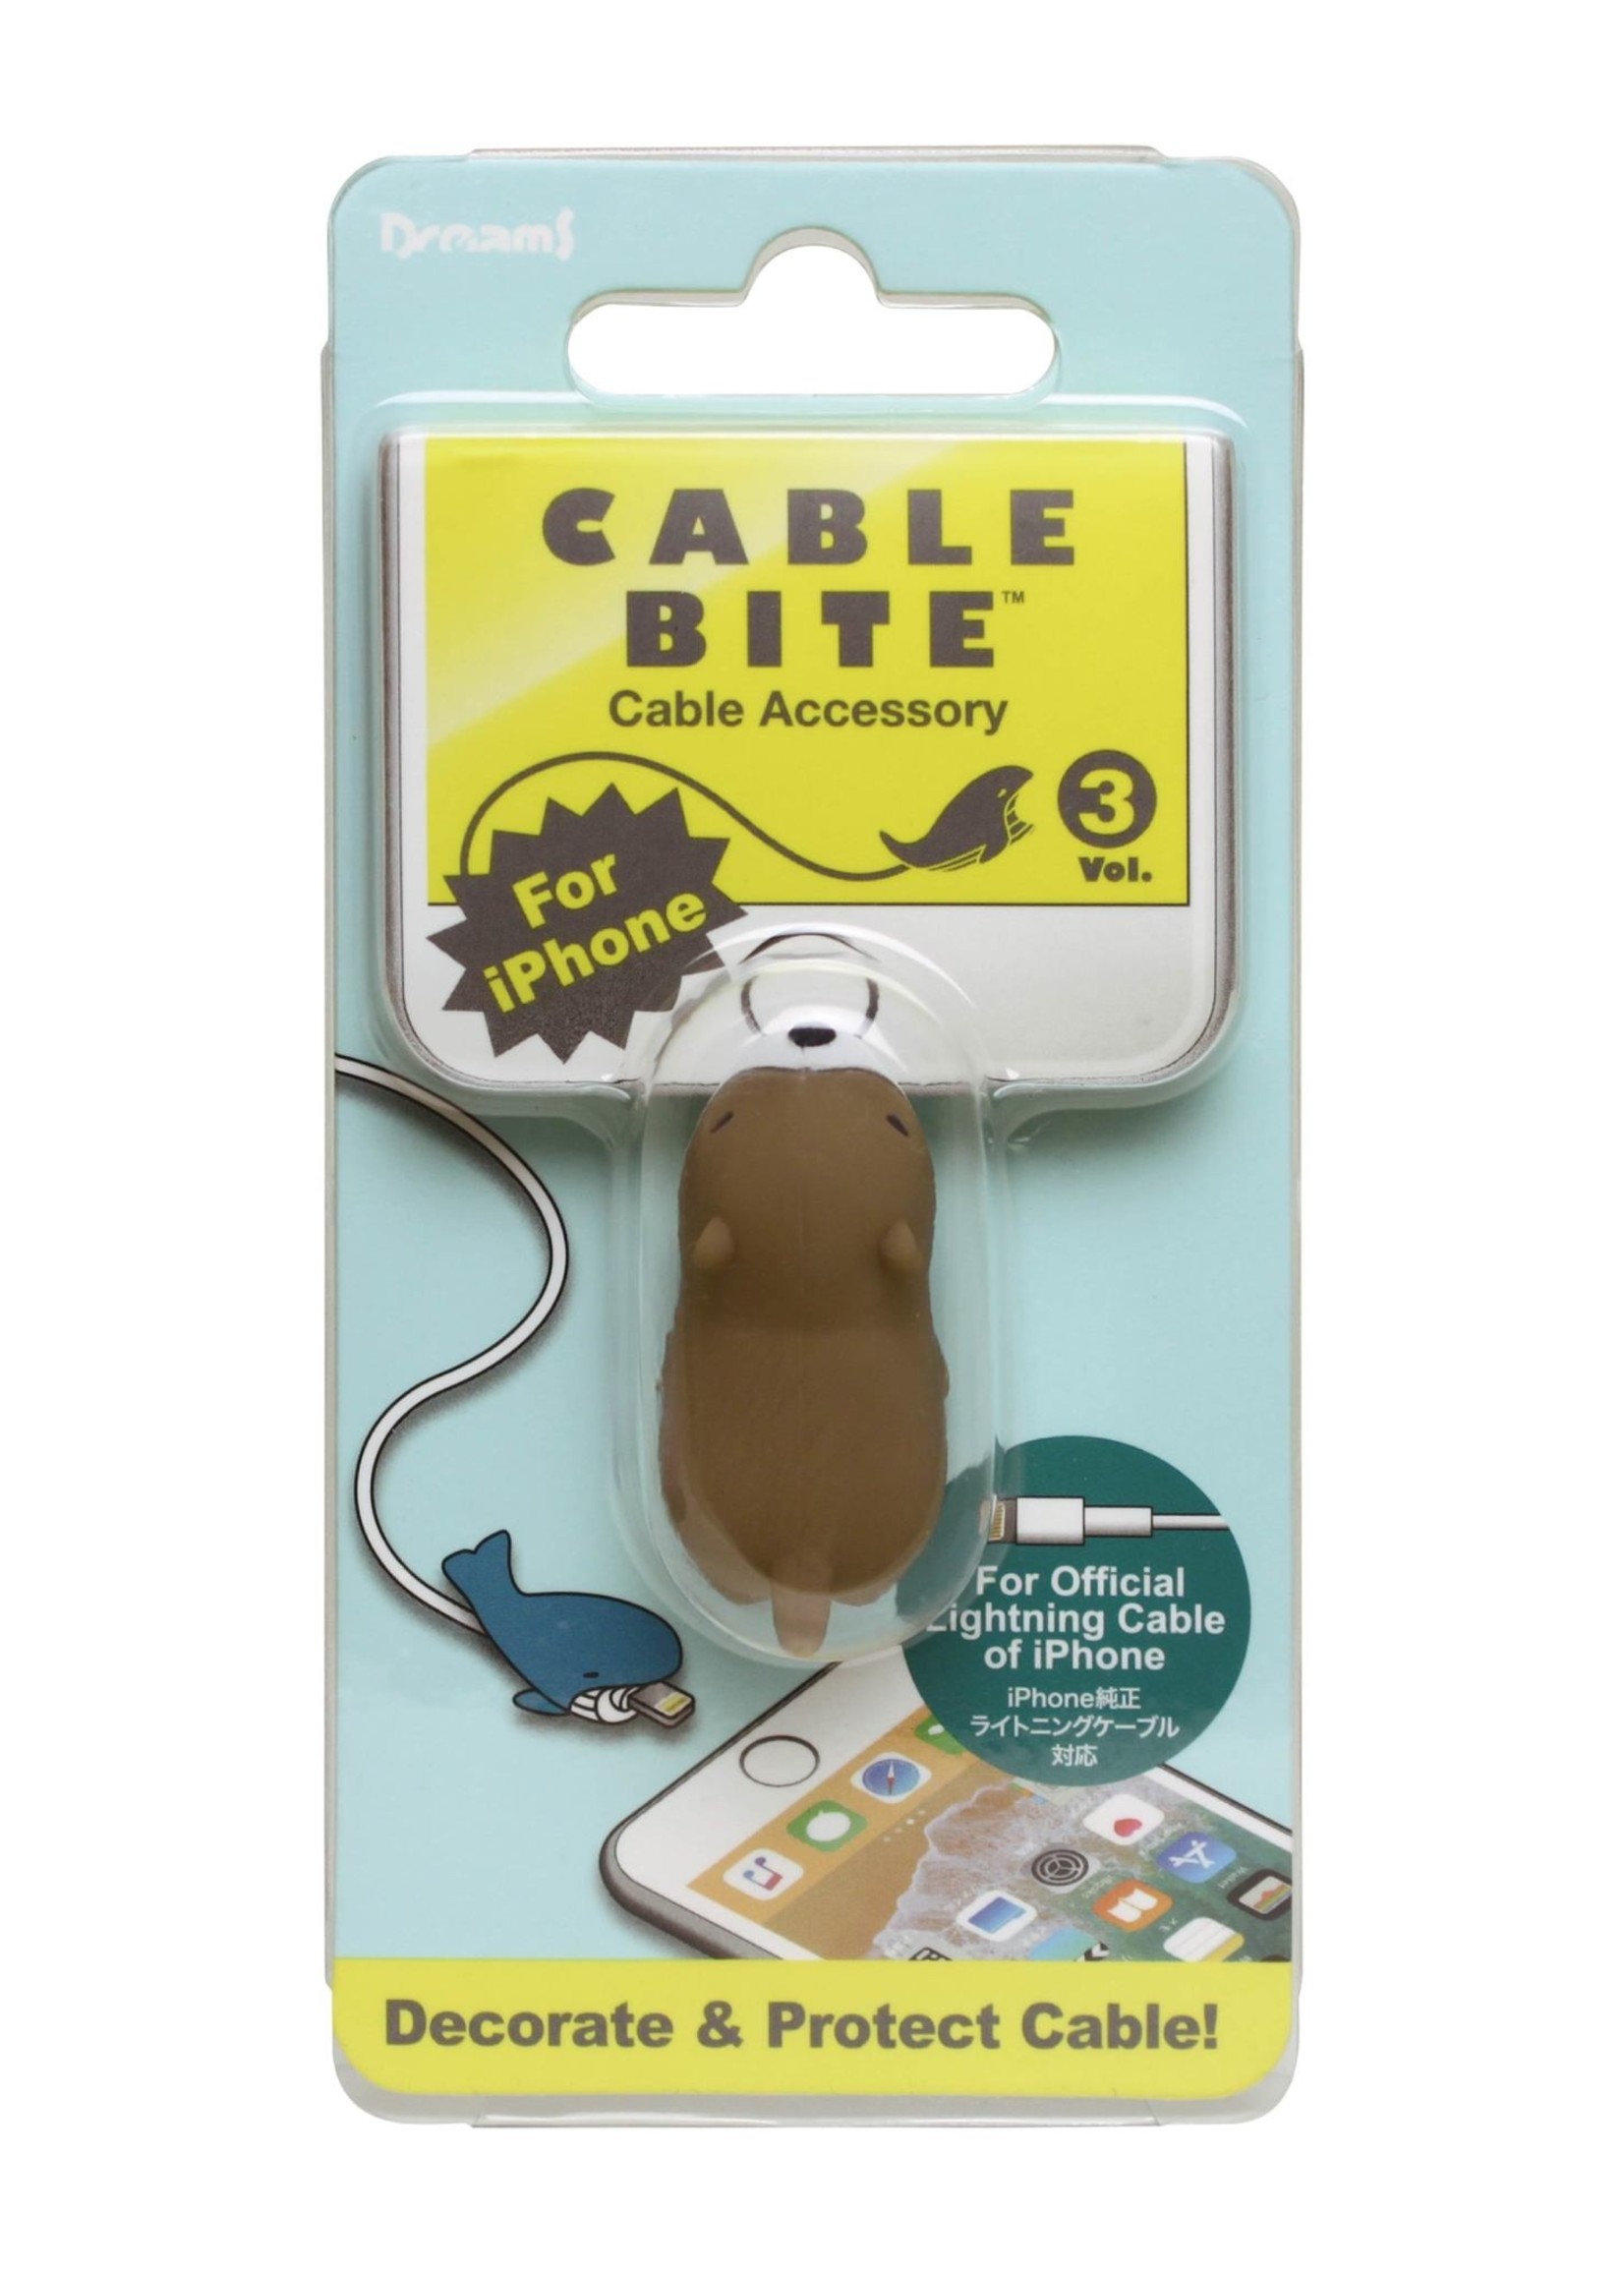 Dreams Cable Bite Otter